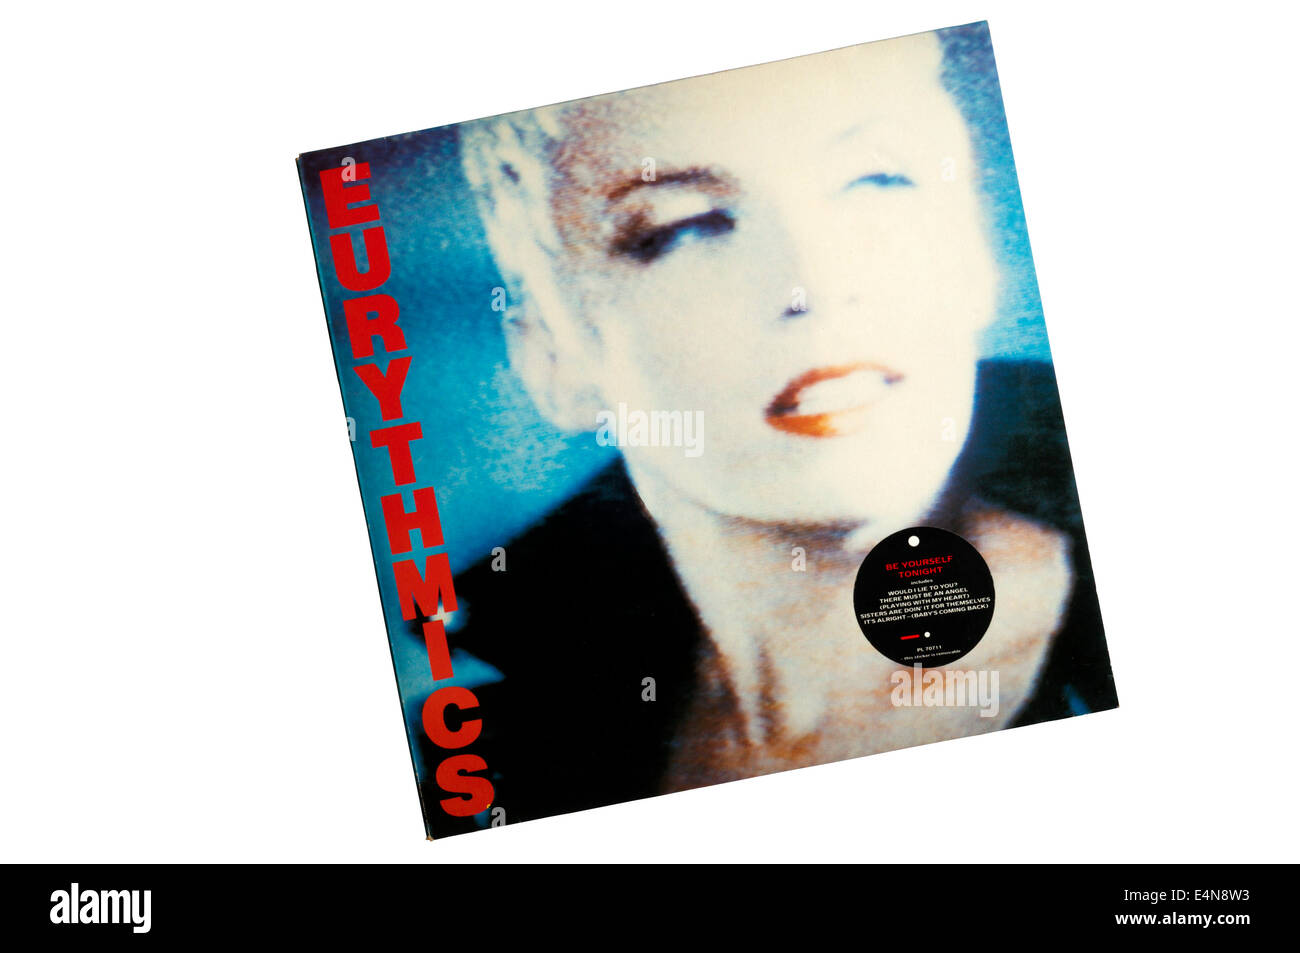 Sii te stesso stasera è stato il quarto album in studio dalla British duo pop degli Eurythmics, rilasciato nel 1985. Foto Stock